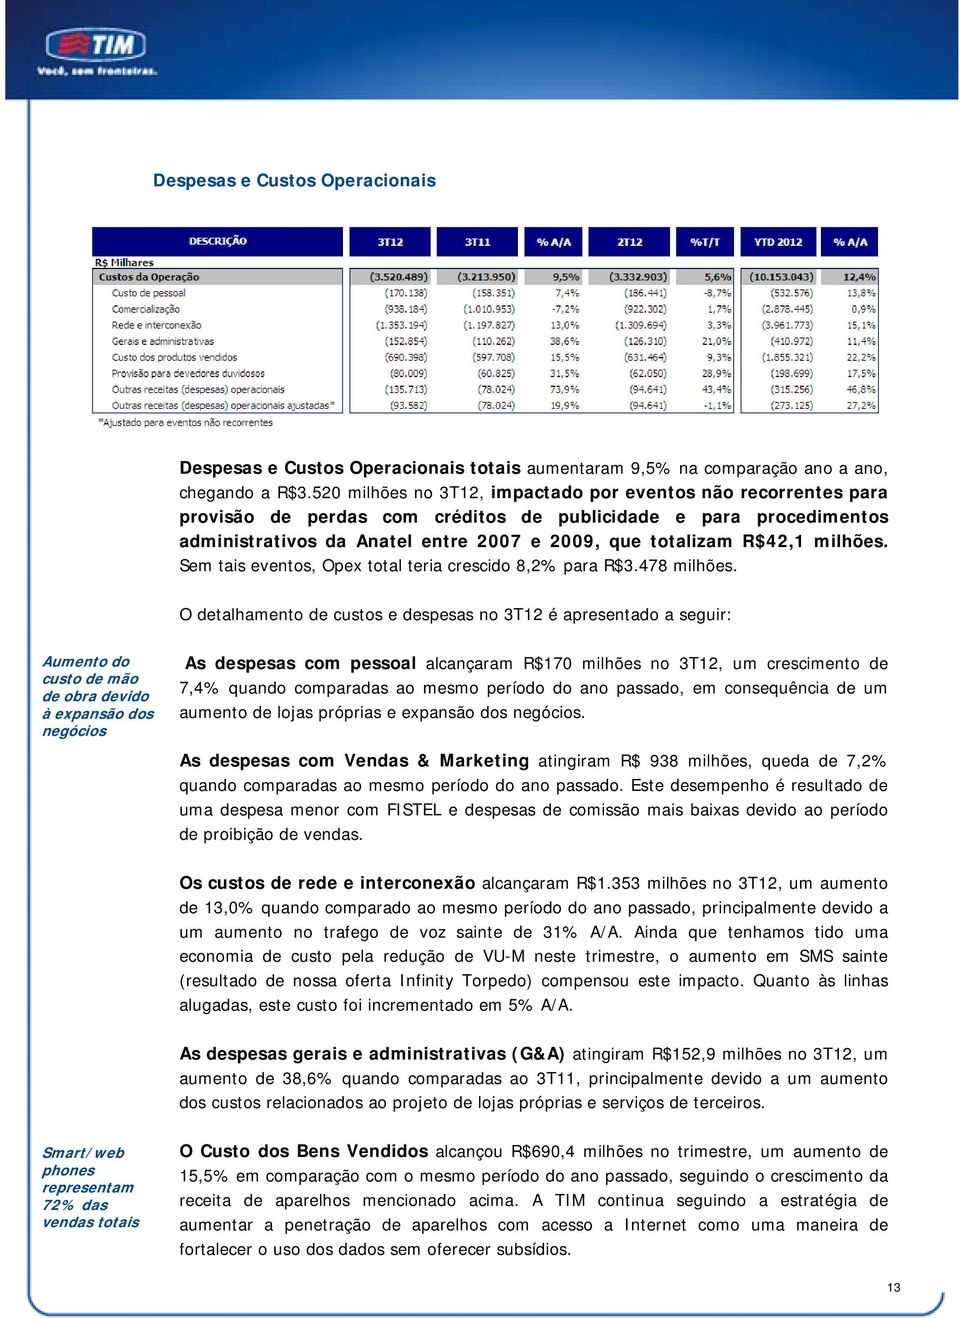 milhões. Sem tais eventos, Opex total teria crescido 8,2% para R$3.478 milhões.